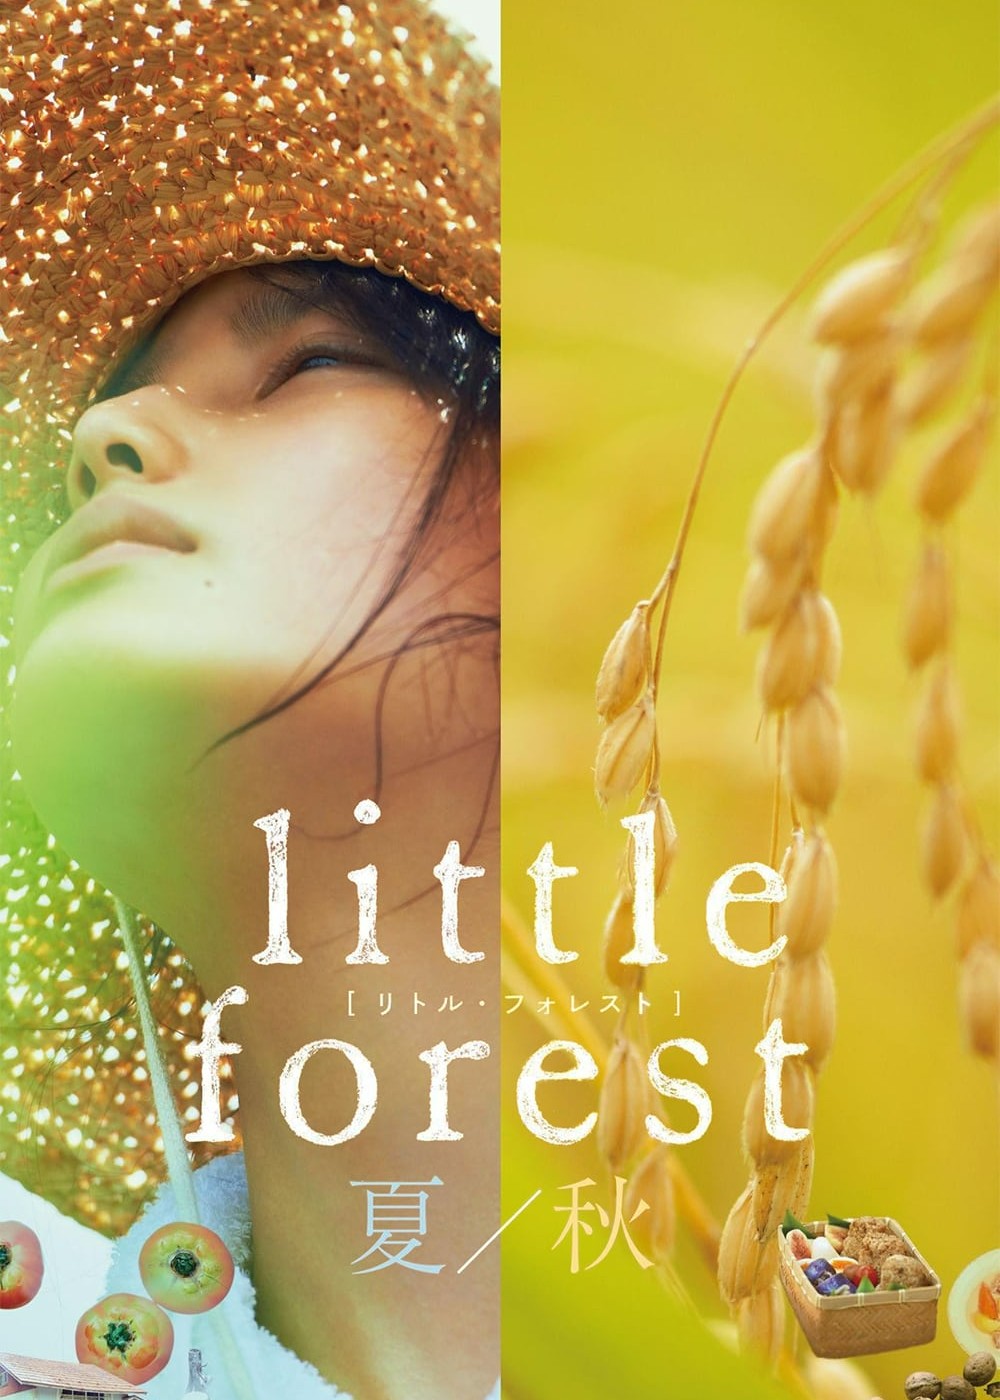 Little Forest: Summer/Autumn 2014